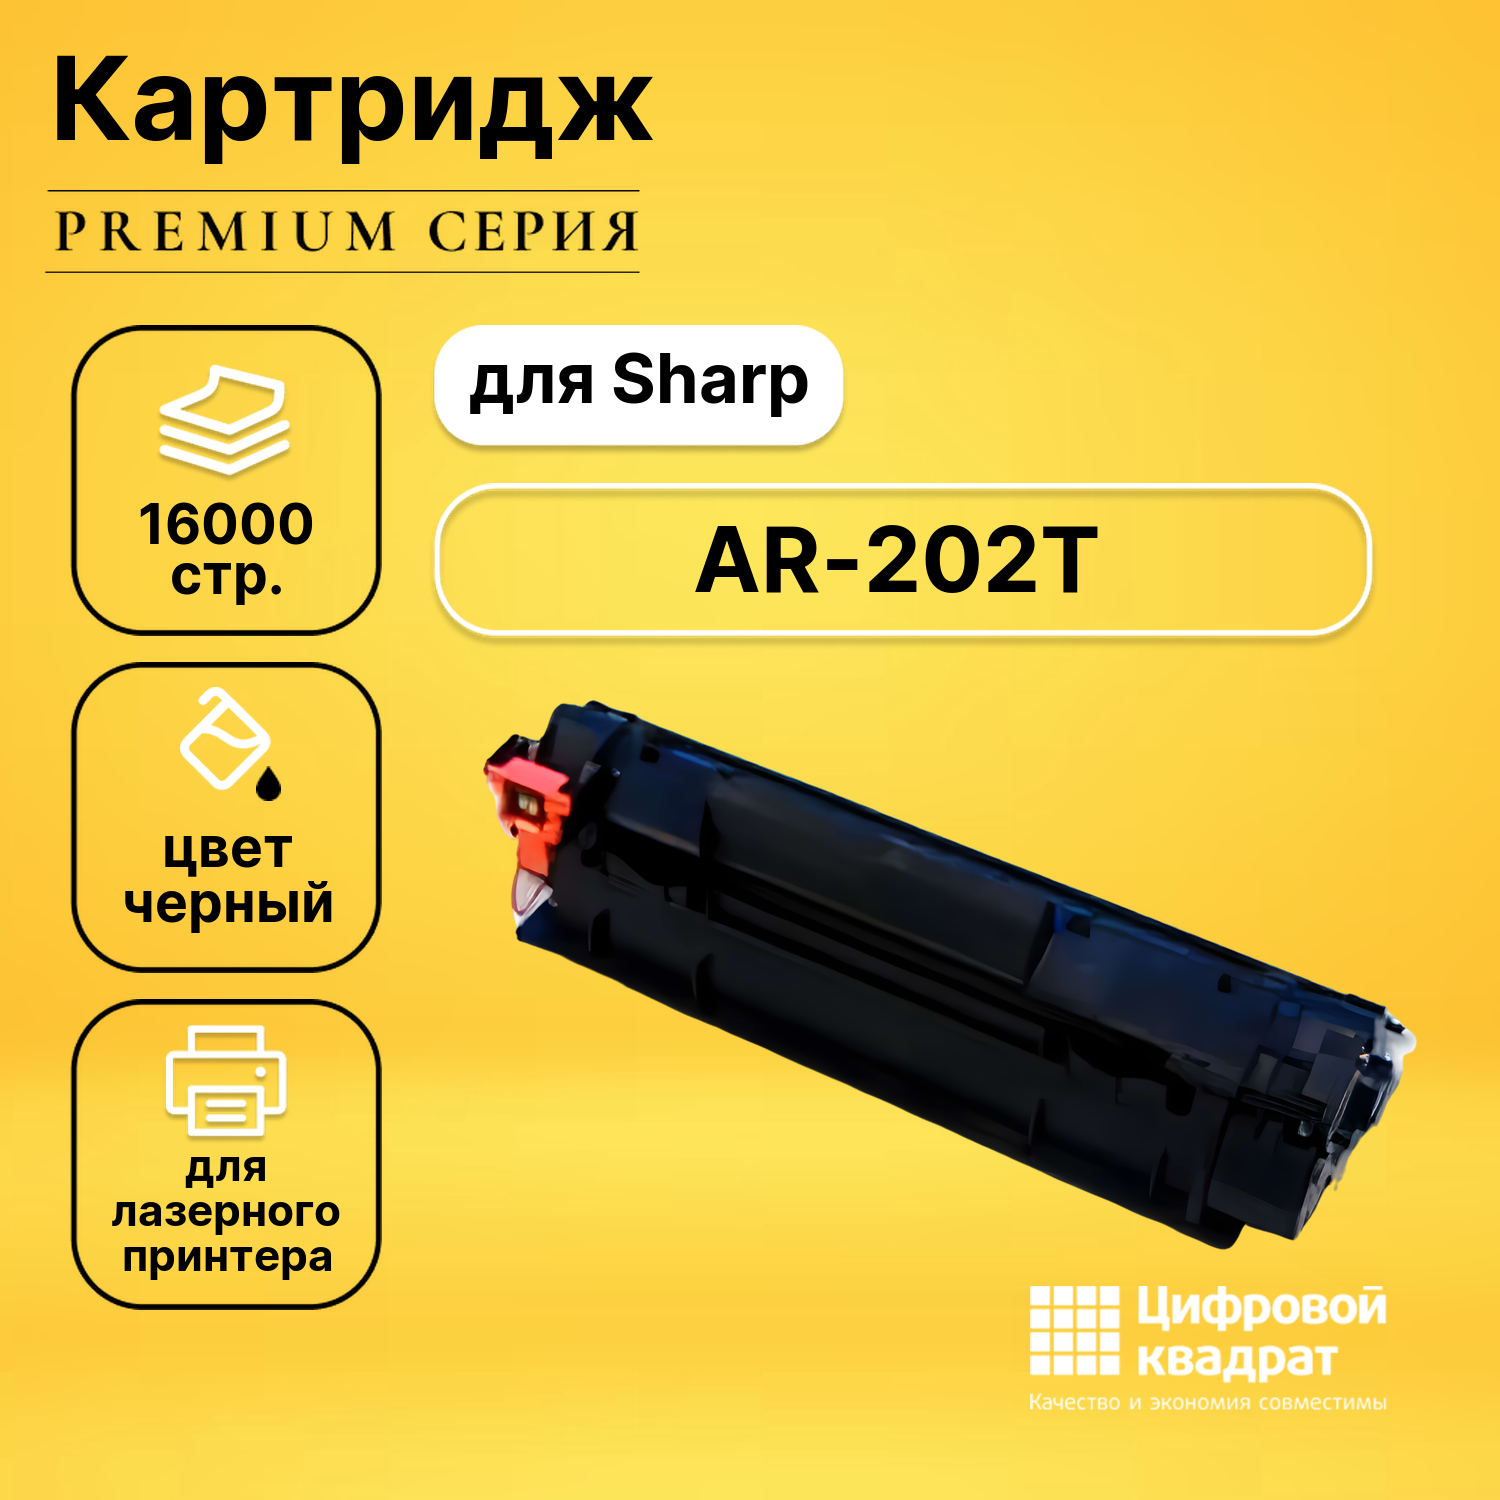 Картридж DS AR-202LT Sharp совместимый